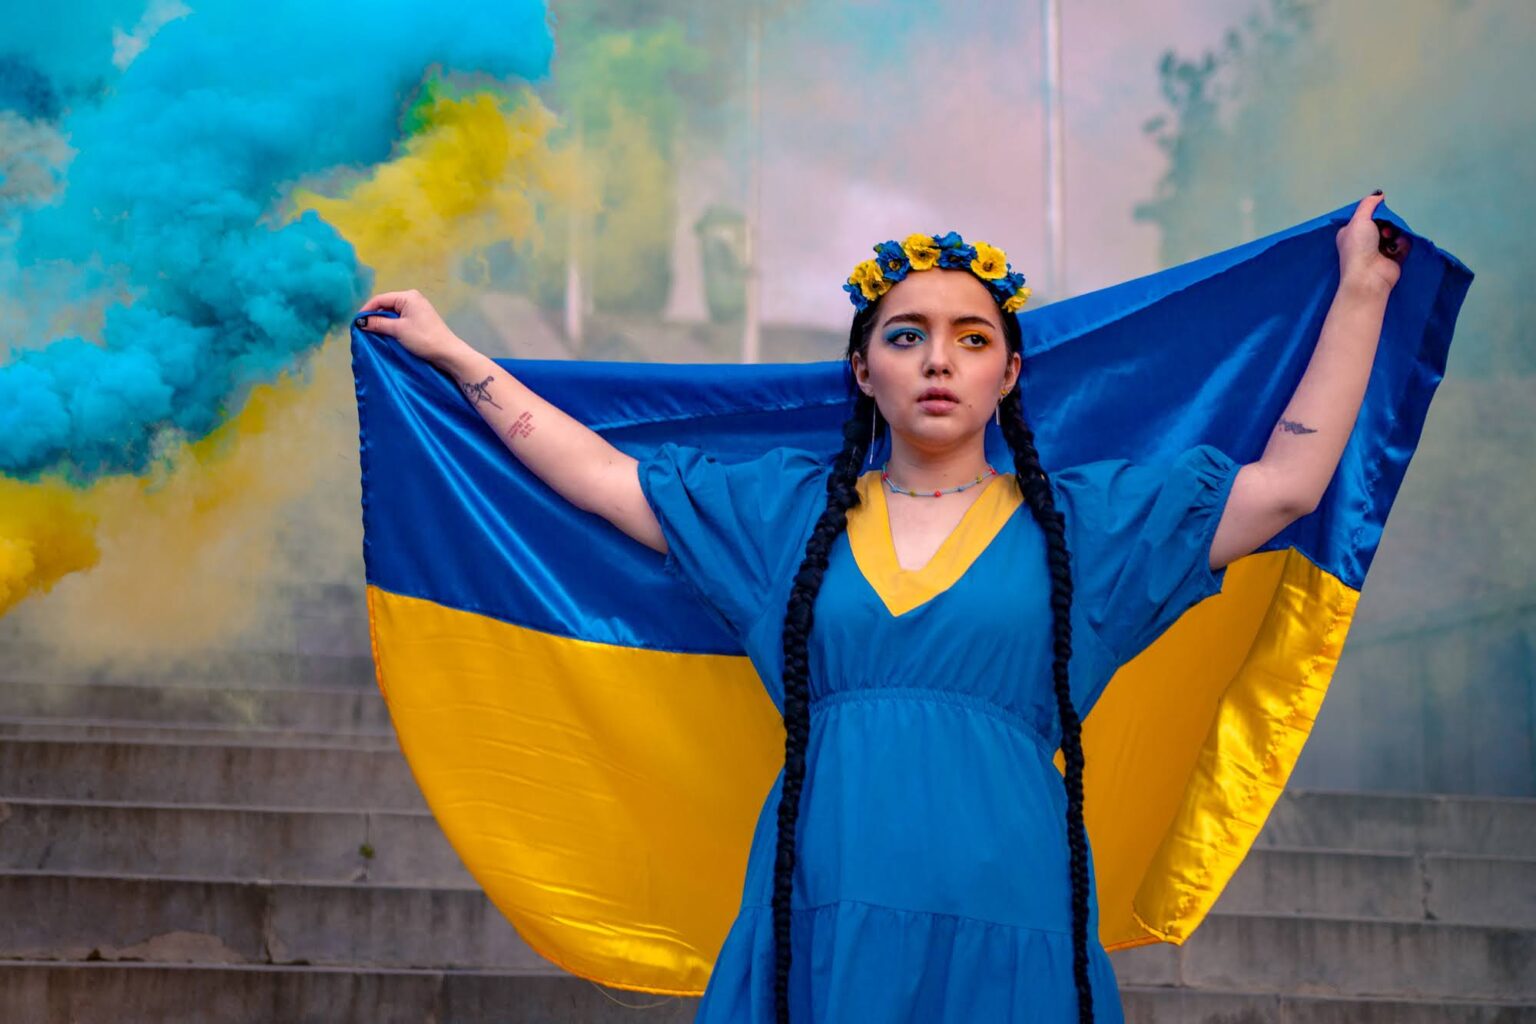 vera oleynikova ukraine demonstration 1536x1024 1 эмигранты эмигранты